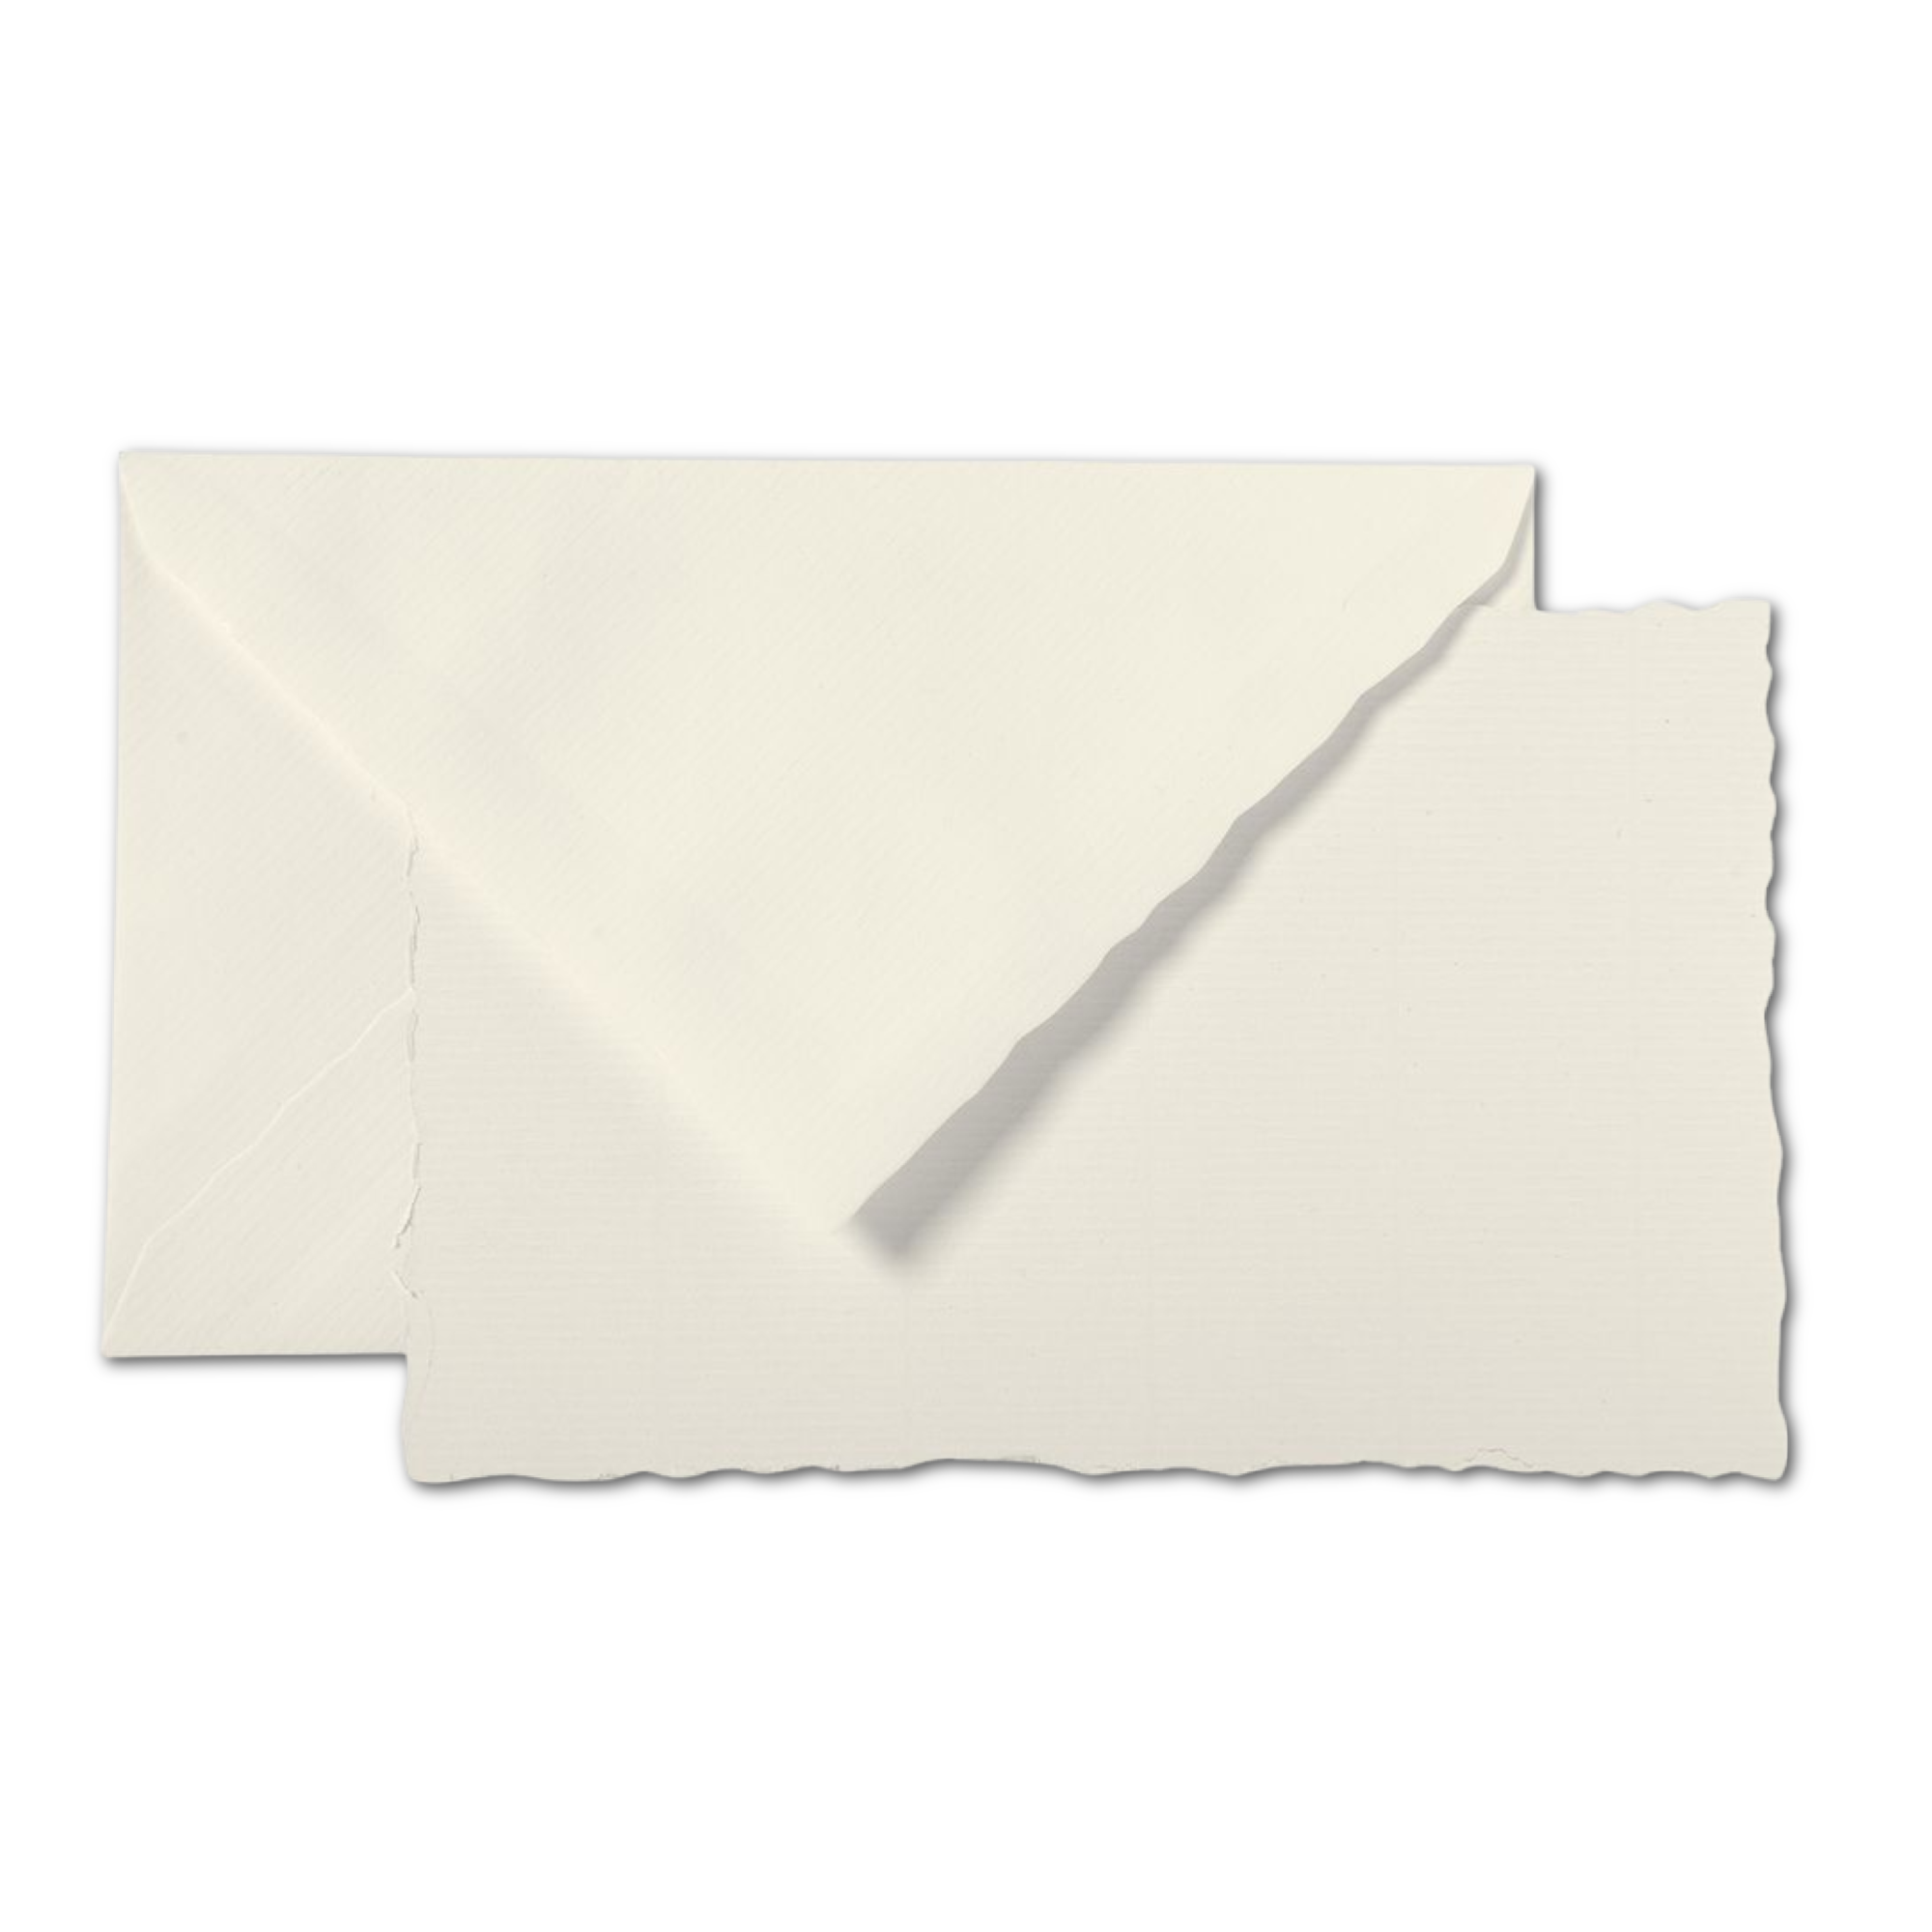 G. Lalo "Verge de France" Card & Envelope Set / Ivory